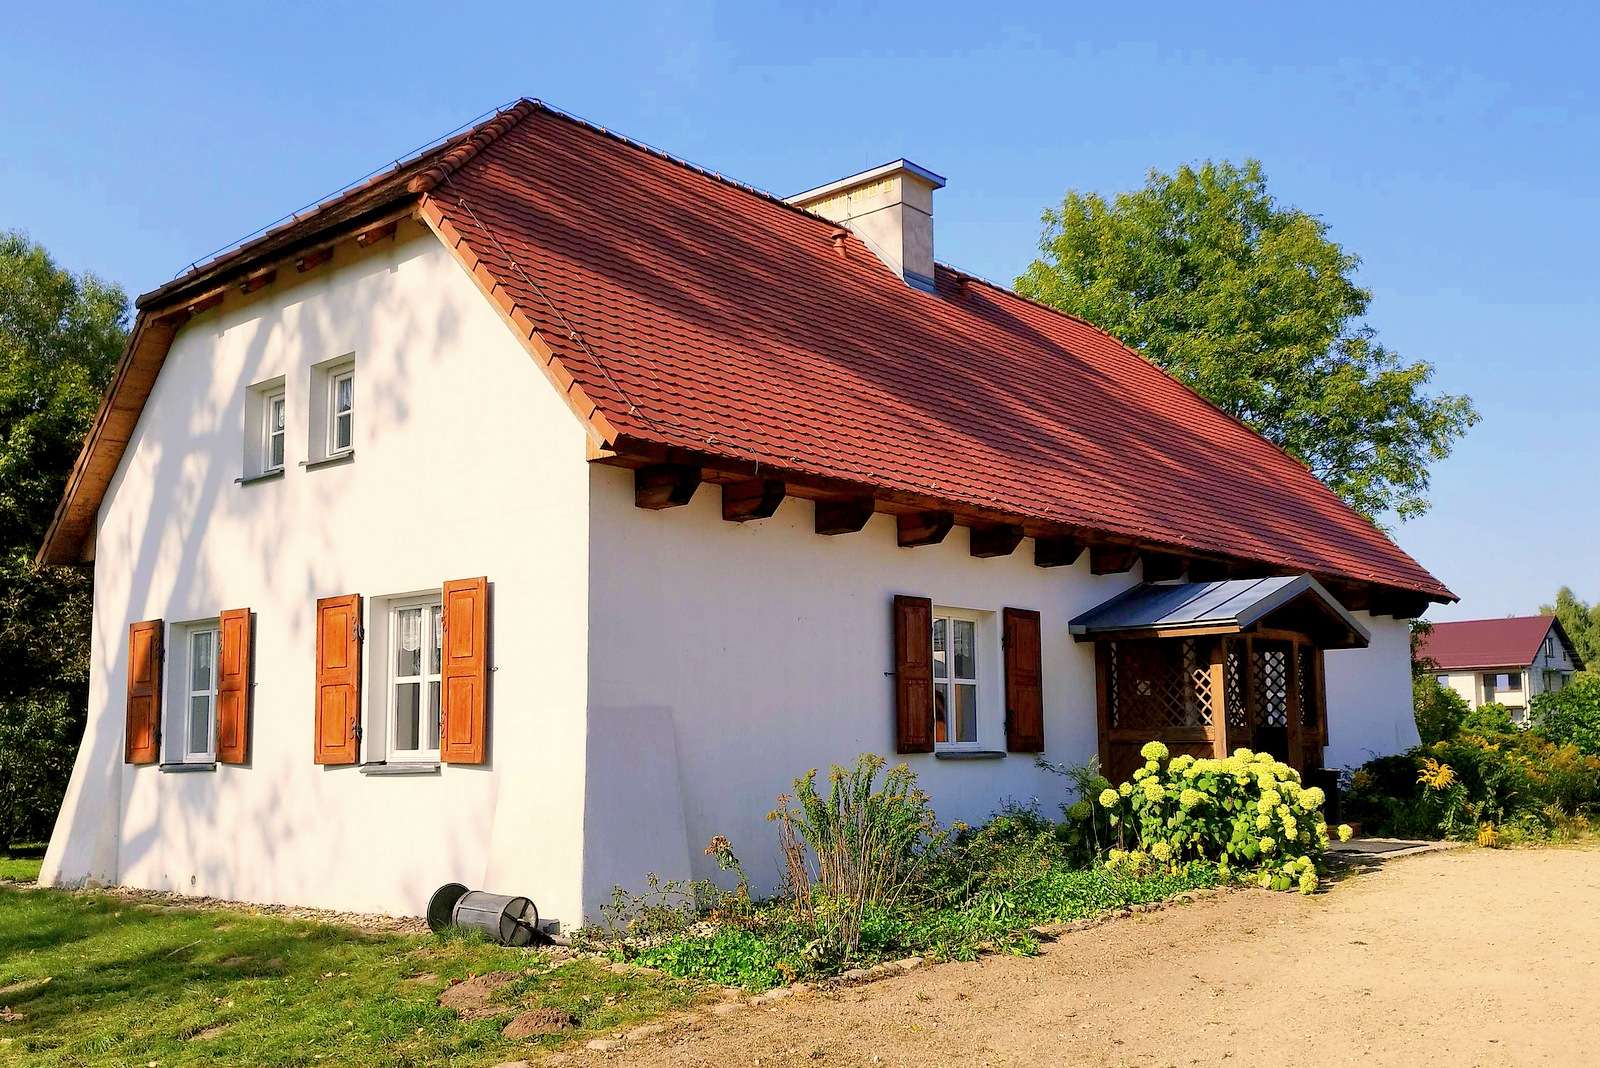 Cottage in Radziejowice (Polen) online puzzel